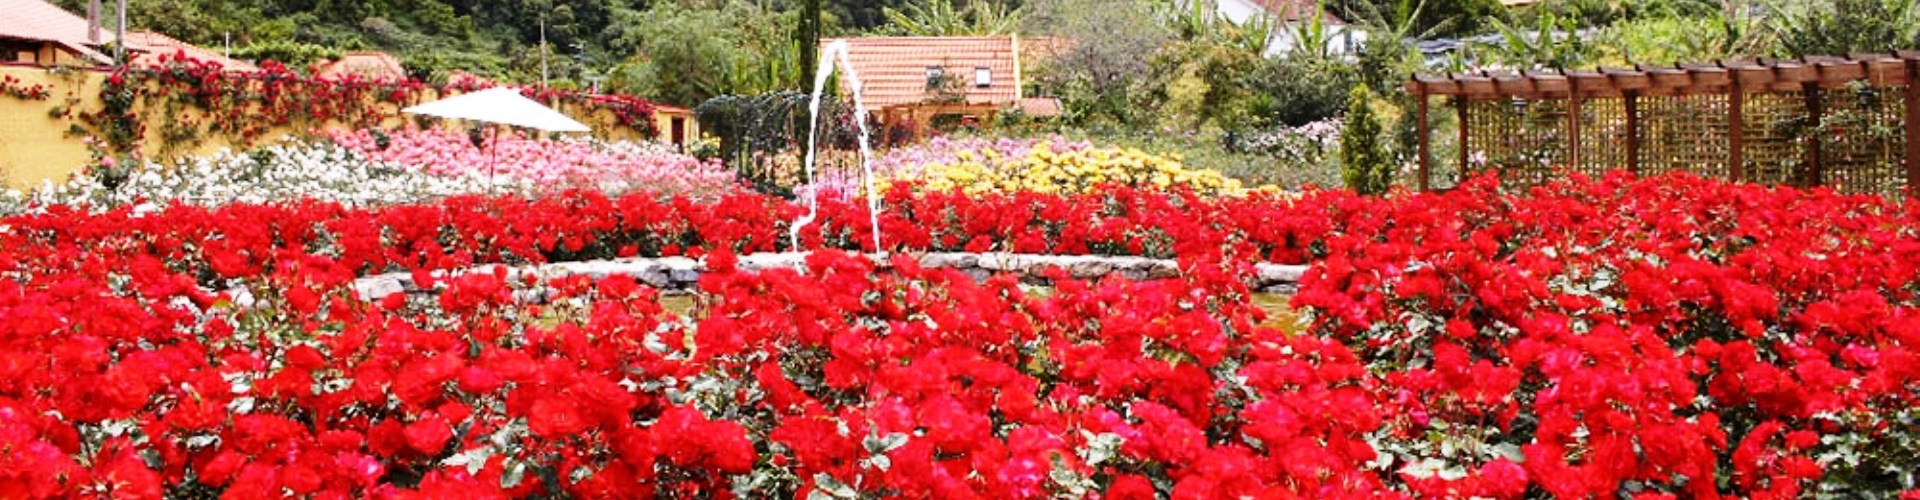 Roseiral da Quinta do Arco Rose Garden, Madeira